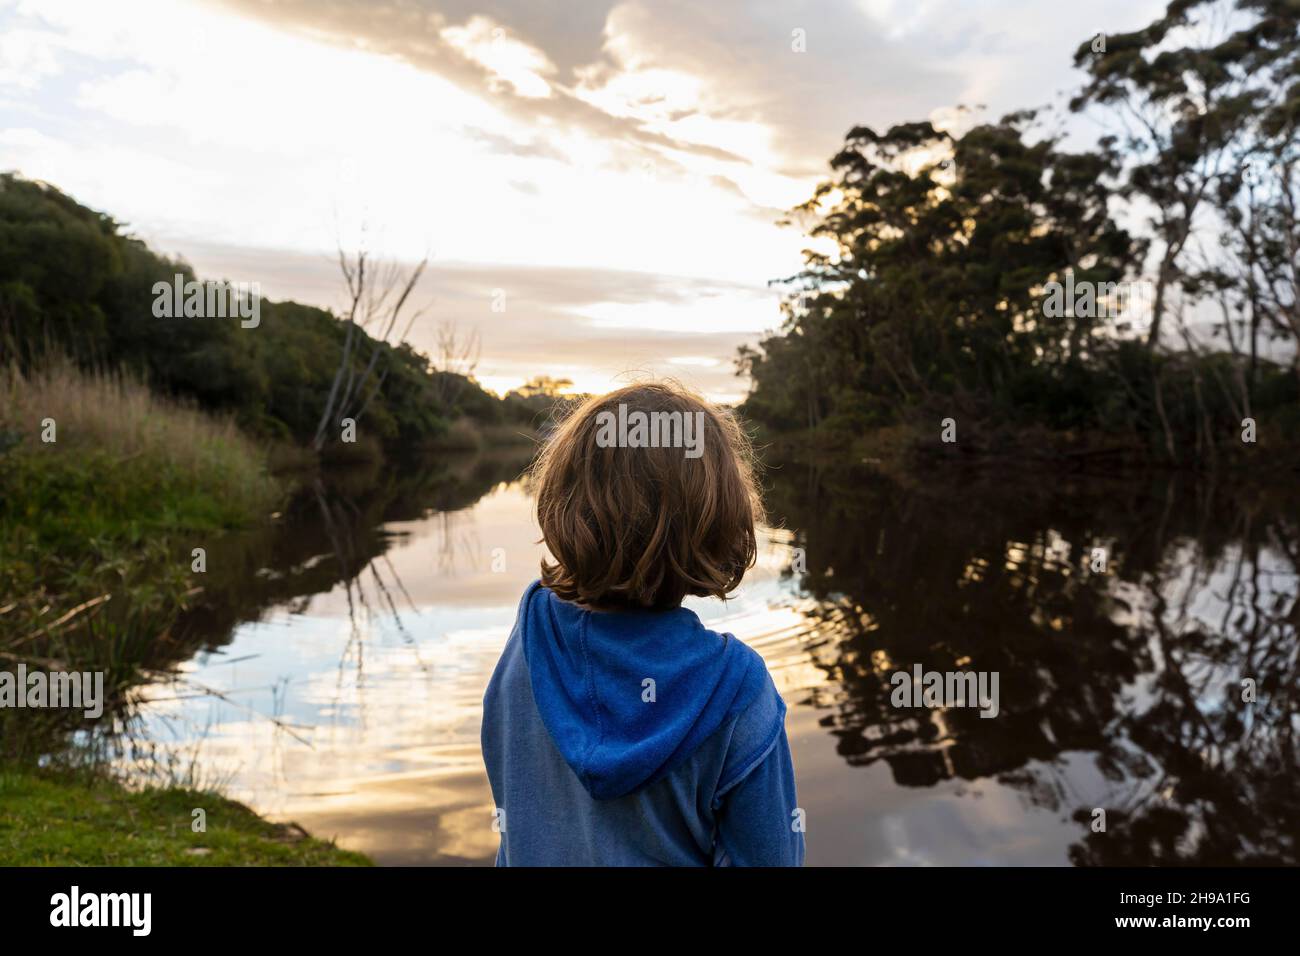 Ein kleiner Junge, der in der Dämmerung an einem Fluss steht, reflektiert den Himmel im flachen, ruhigen Wasser Stockfoto